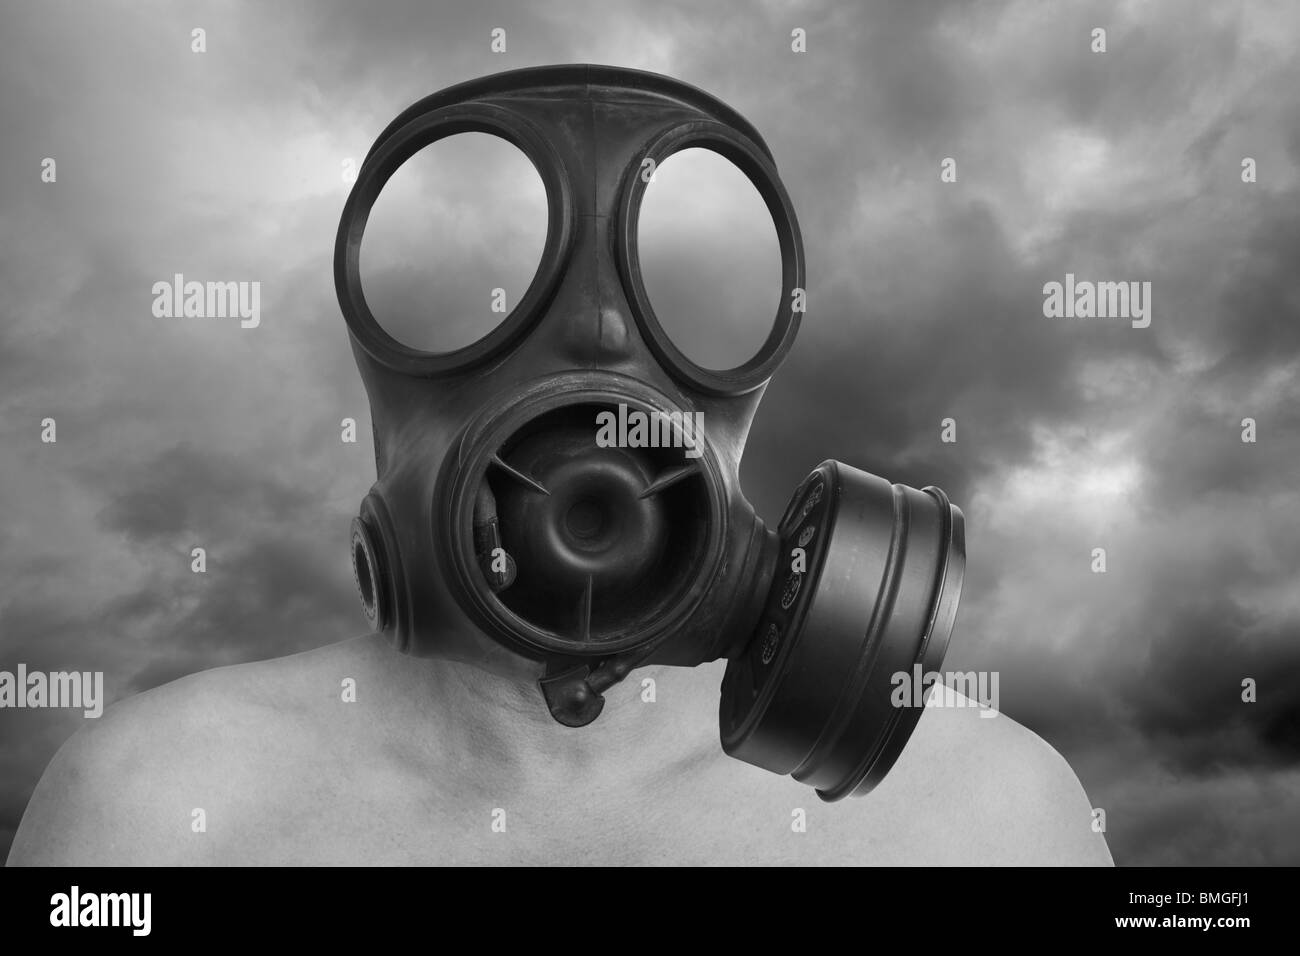 Man wearing a gas mask Stock Photo